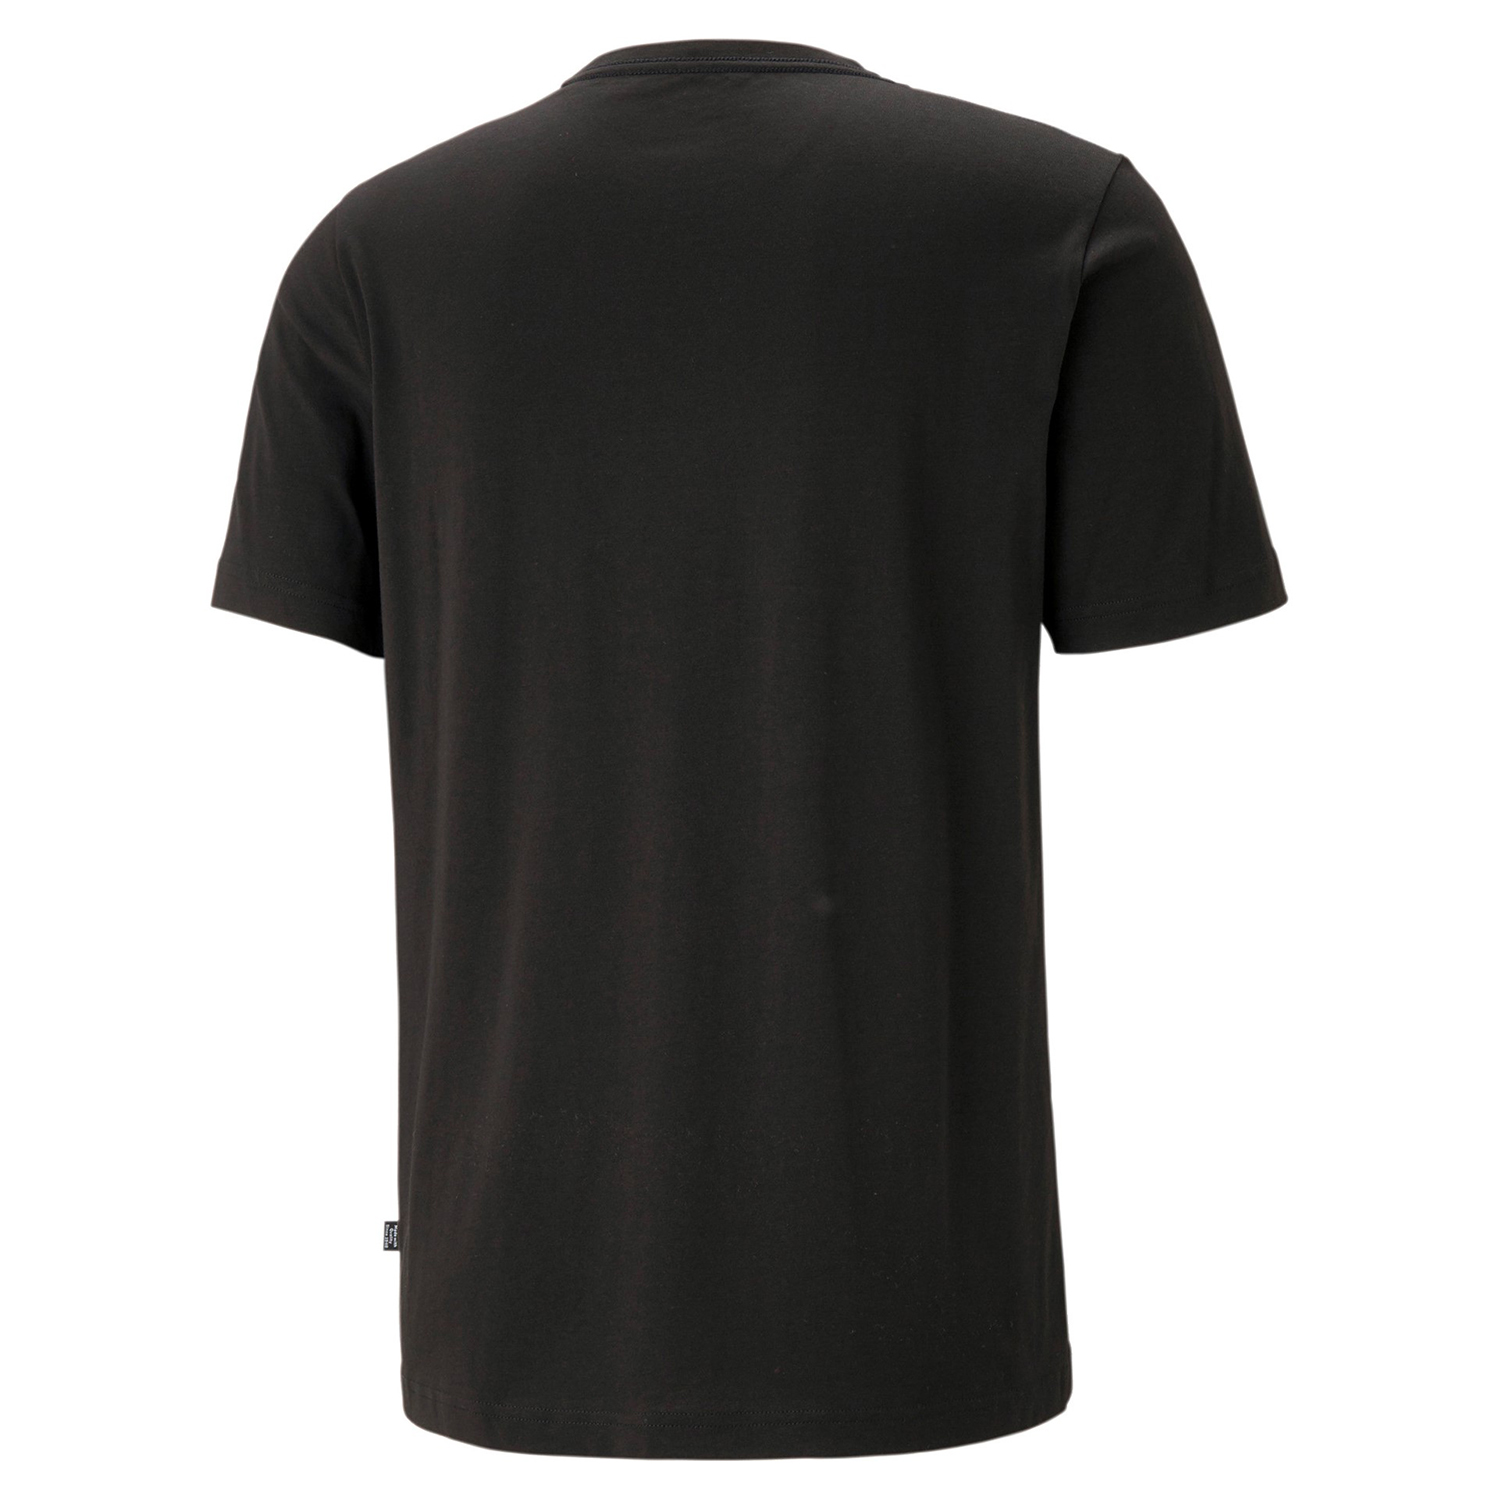 PUMA Herren ESS Essential Small Logo Tee T-Shirt Übergröße schwarz bis 4XL